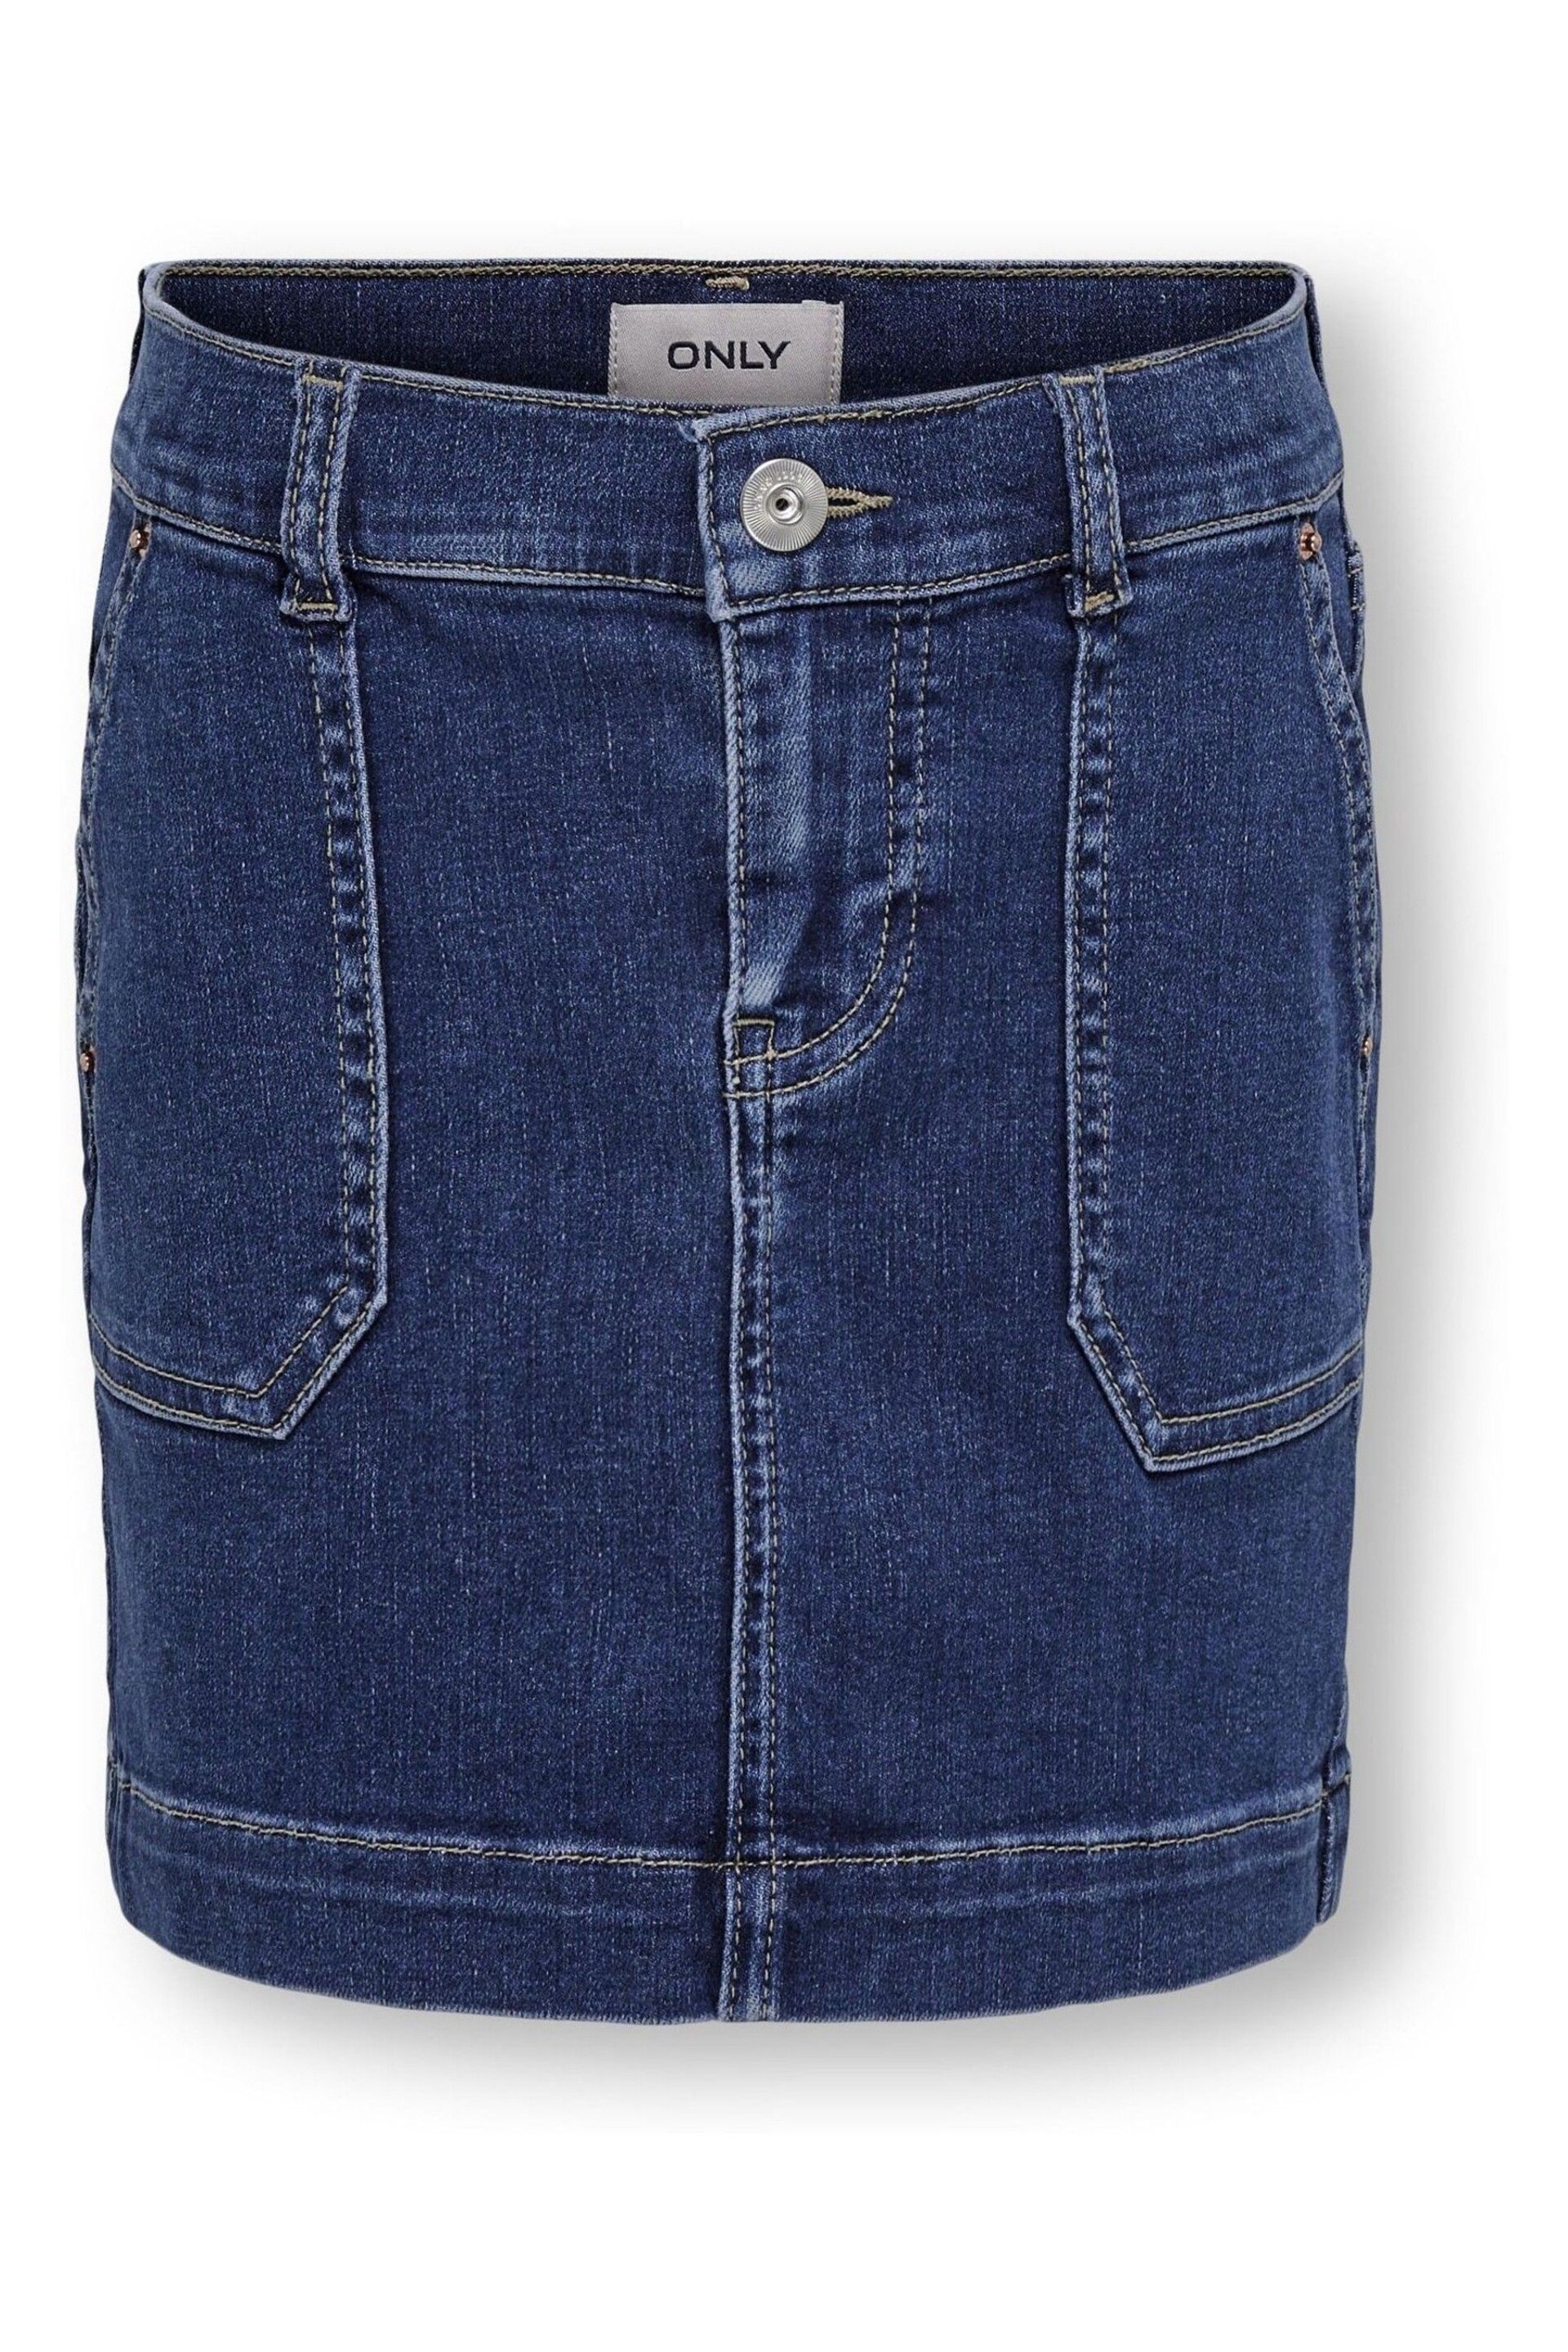 ONLY KIDS Blue Utility Pocket Denim Mini Skirt - Image 2 of 3